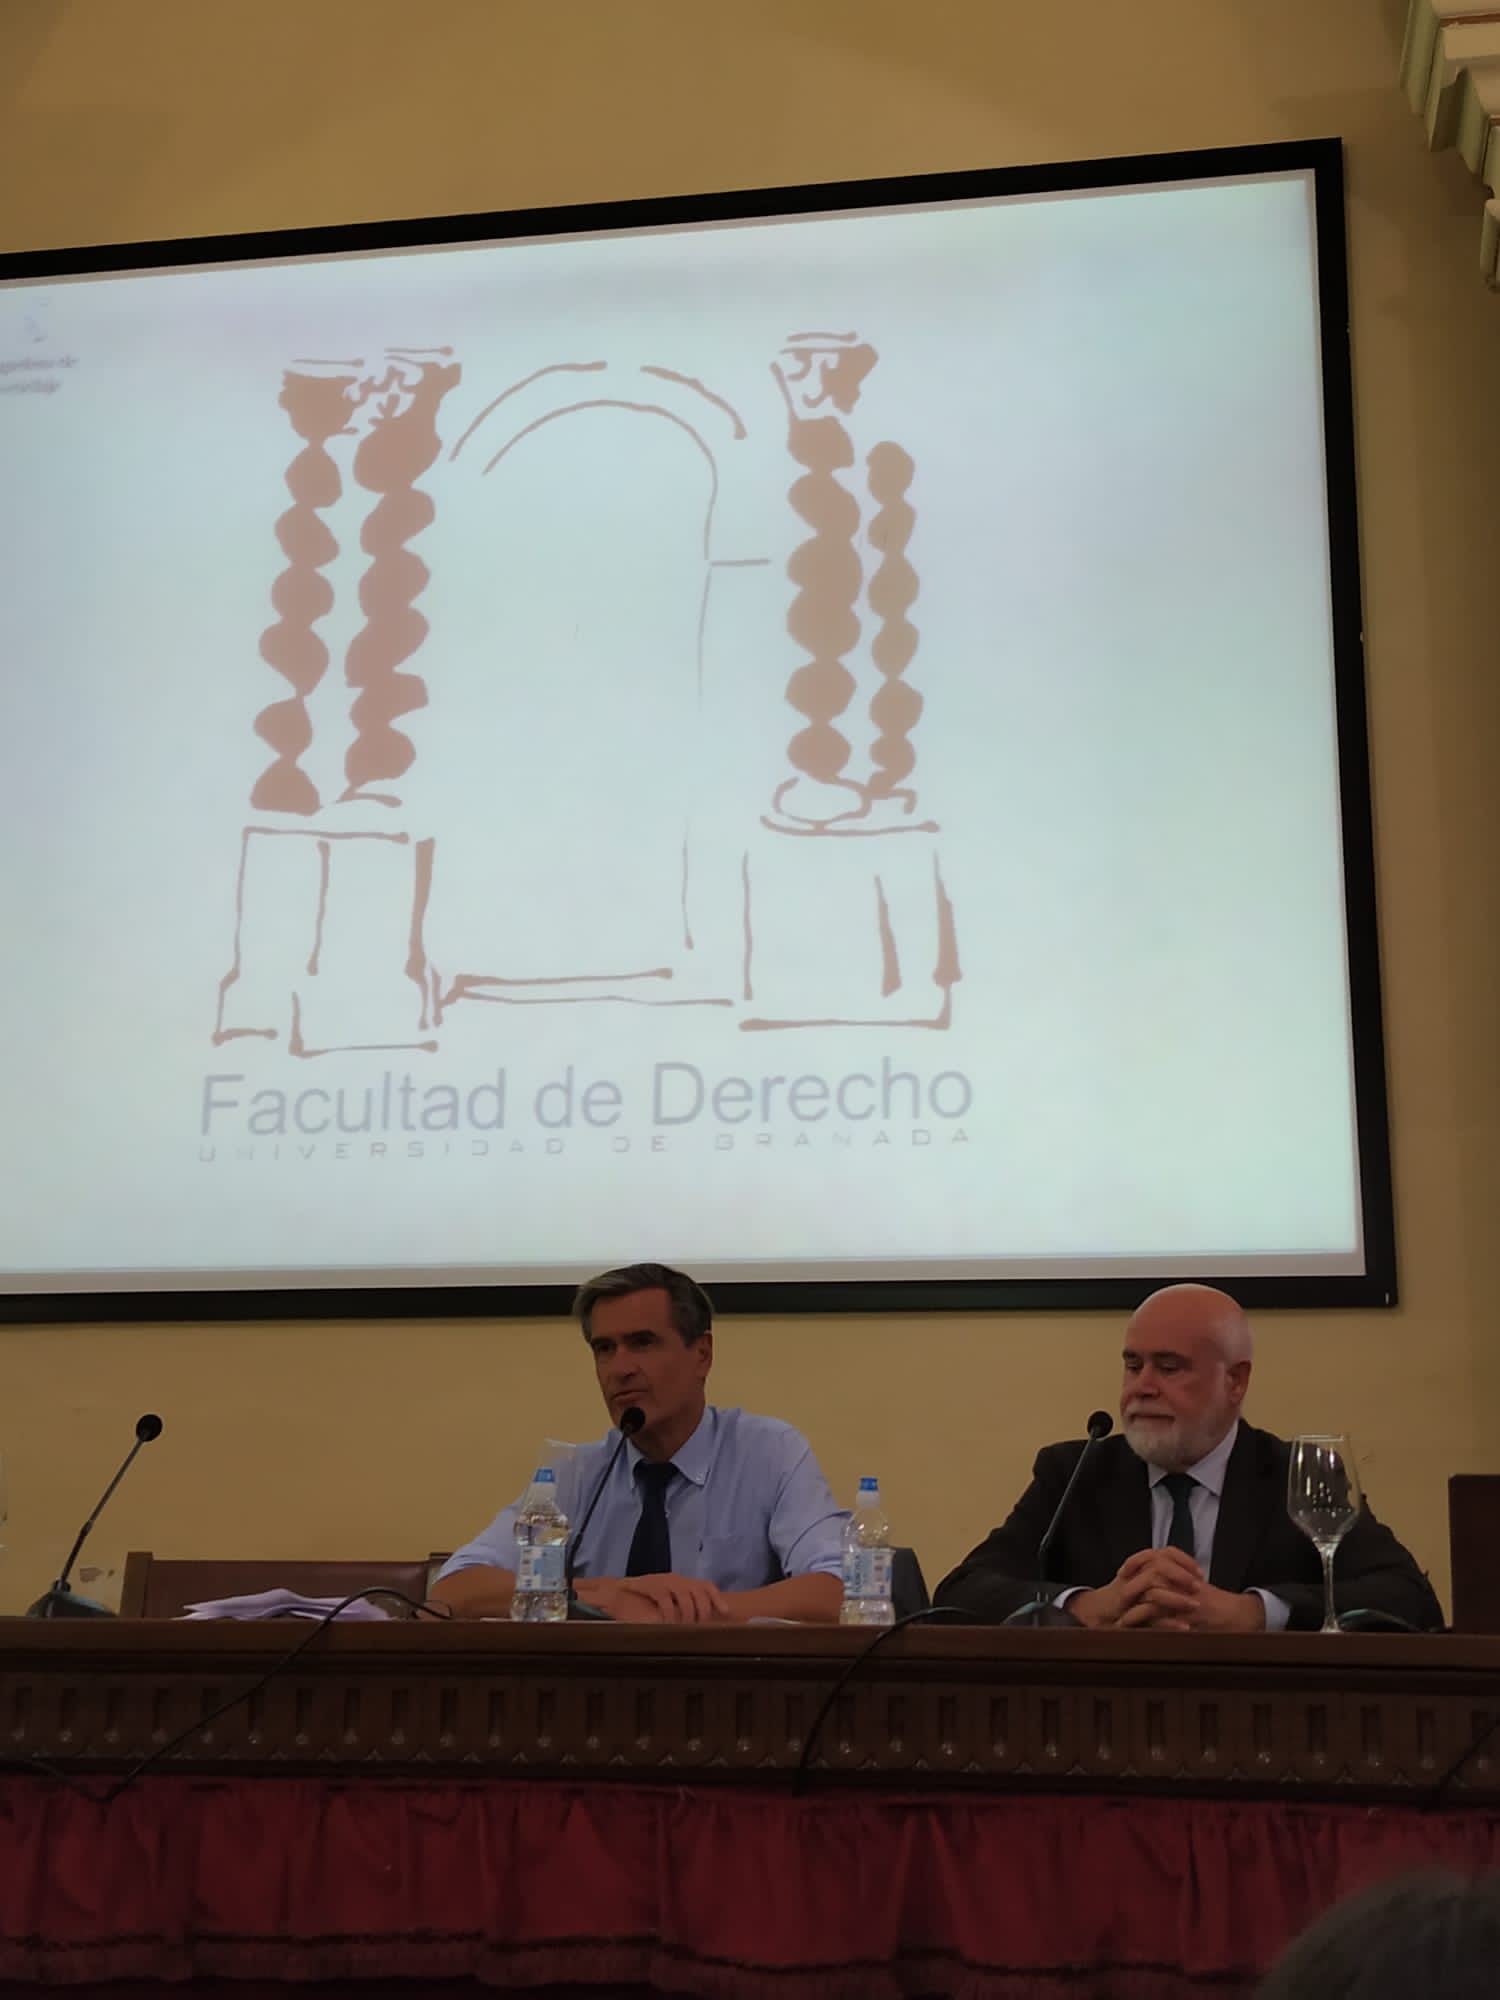 Imagen en la que se puede ver al profesor López Aguilar realizando una intervención en la conferencia